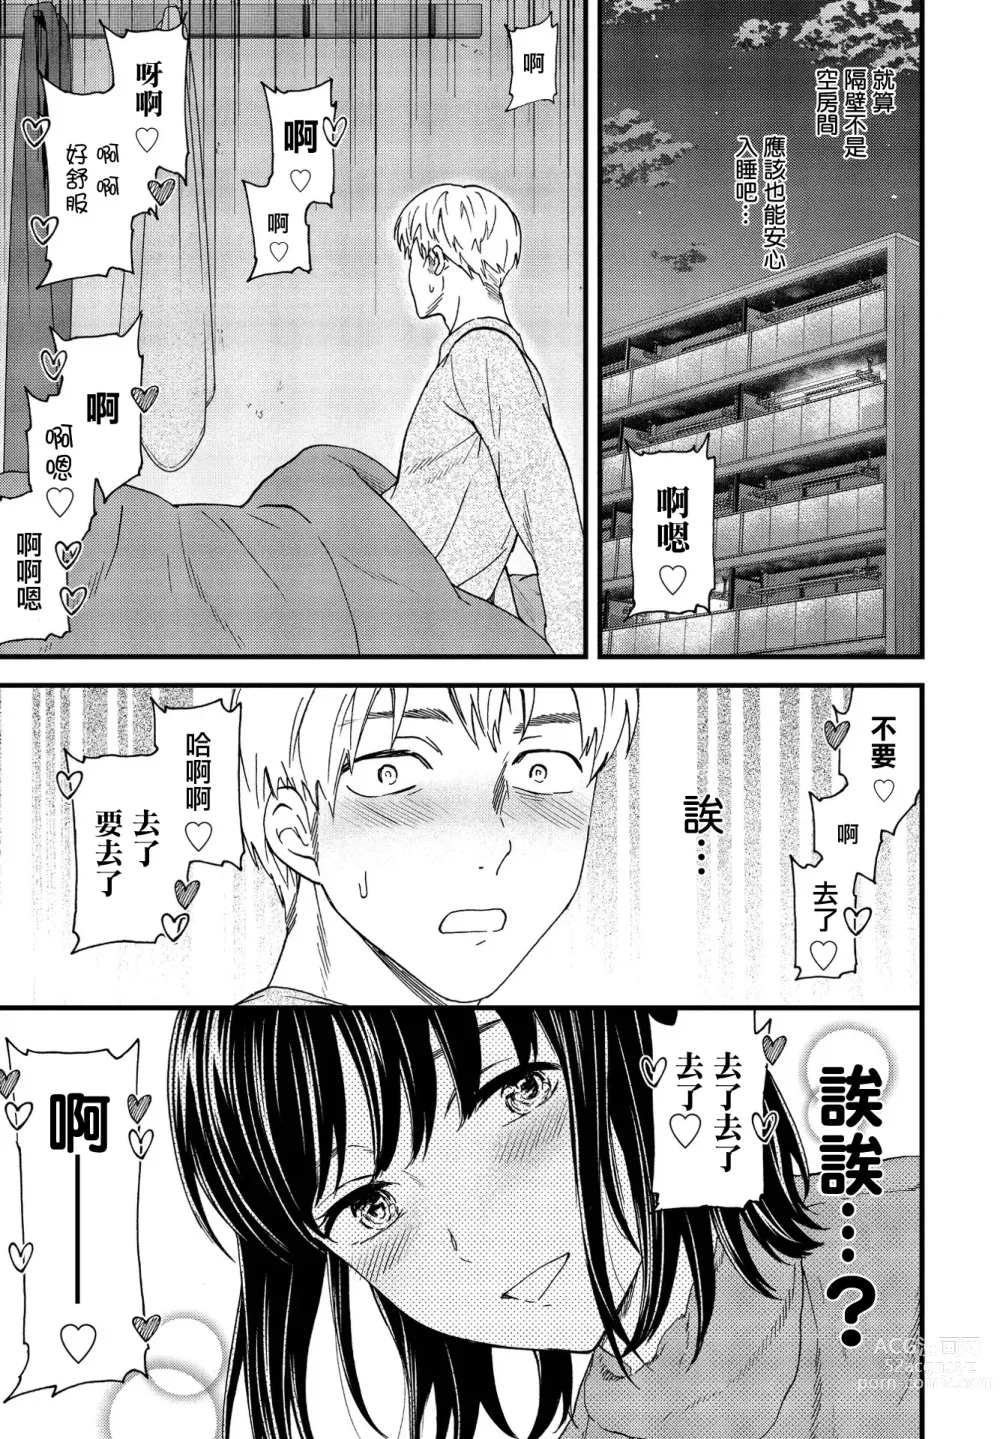 Page 3 of manga Utsubokazura Zenpen